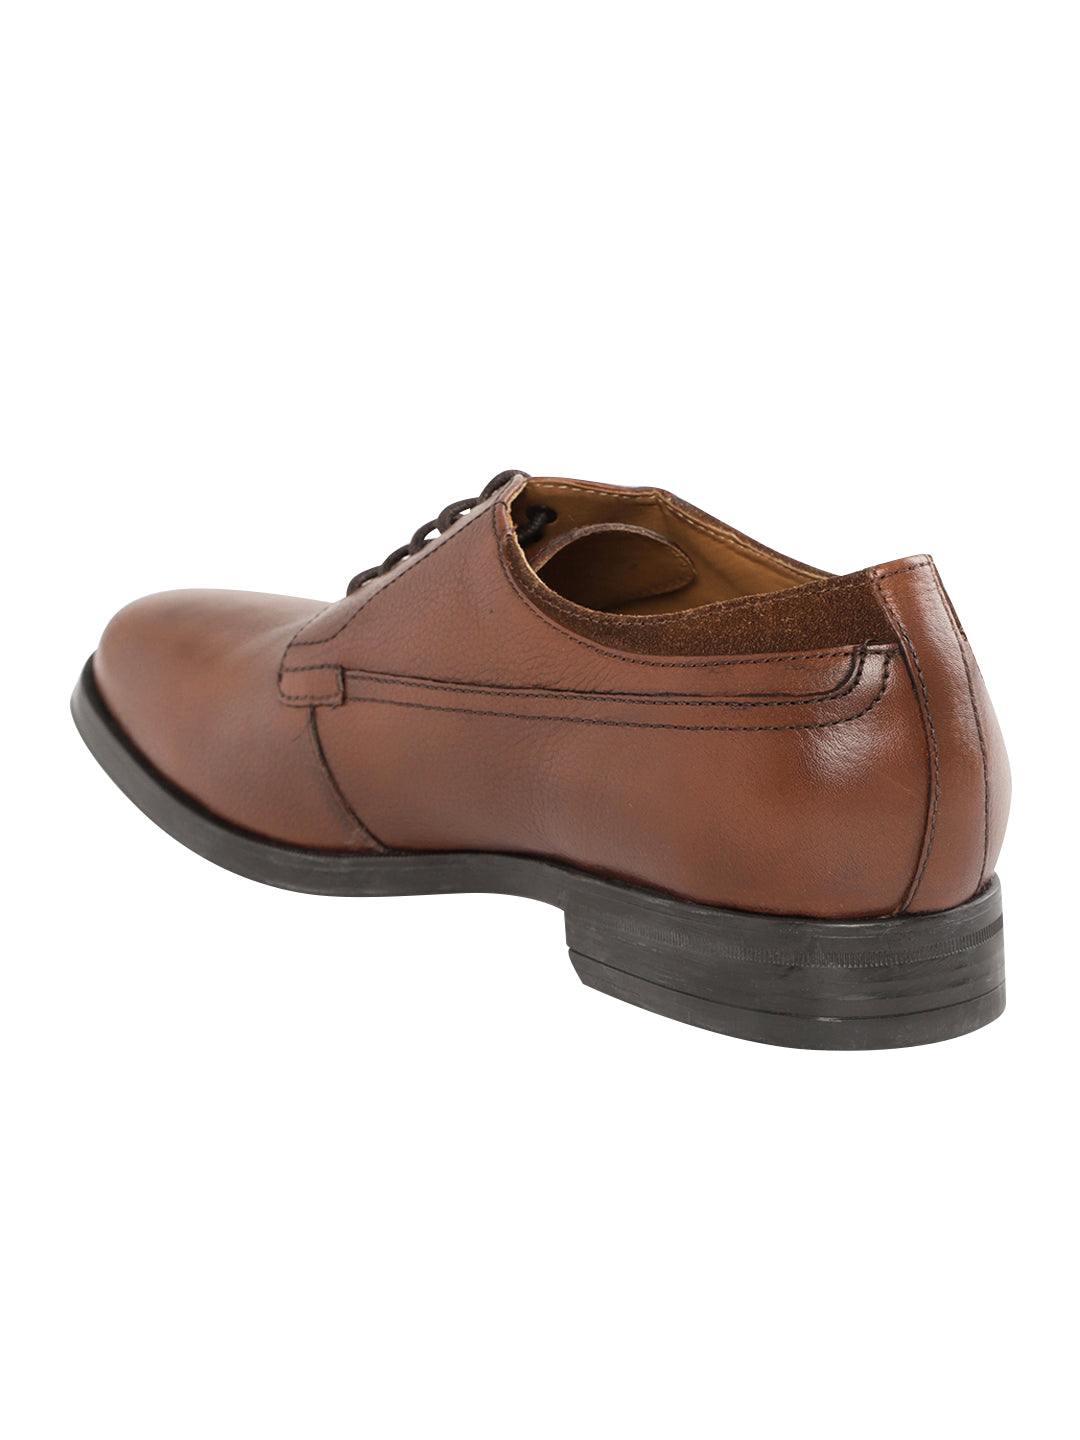 Footwear, Men Footwear, Brown Formal Shoes